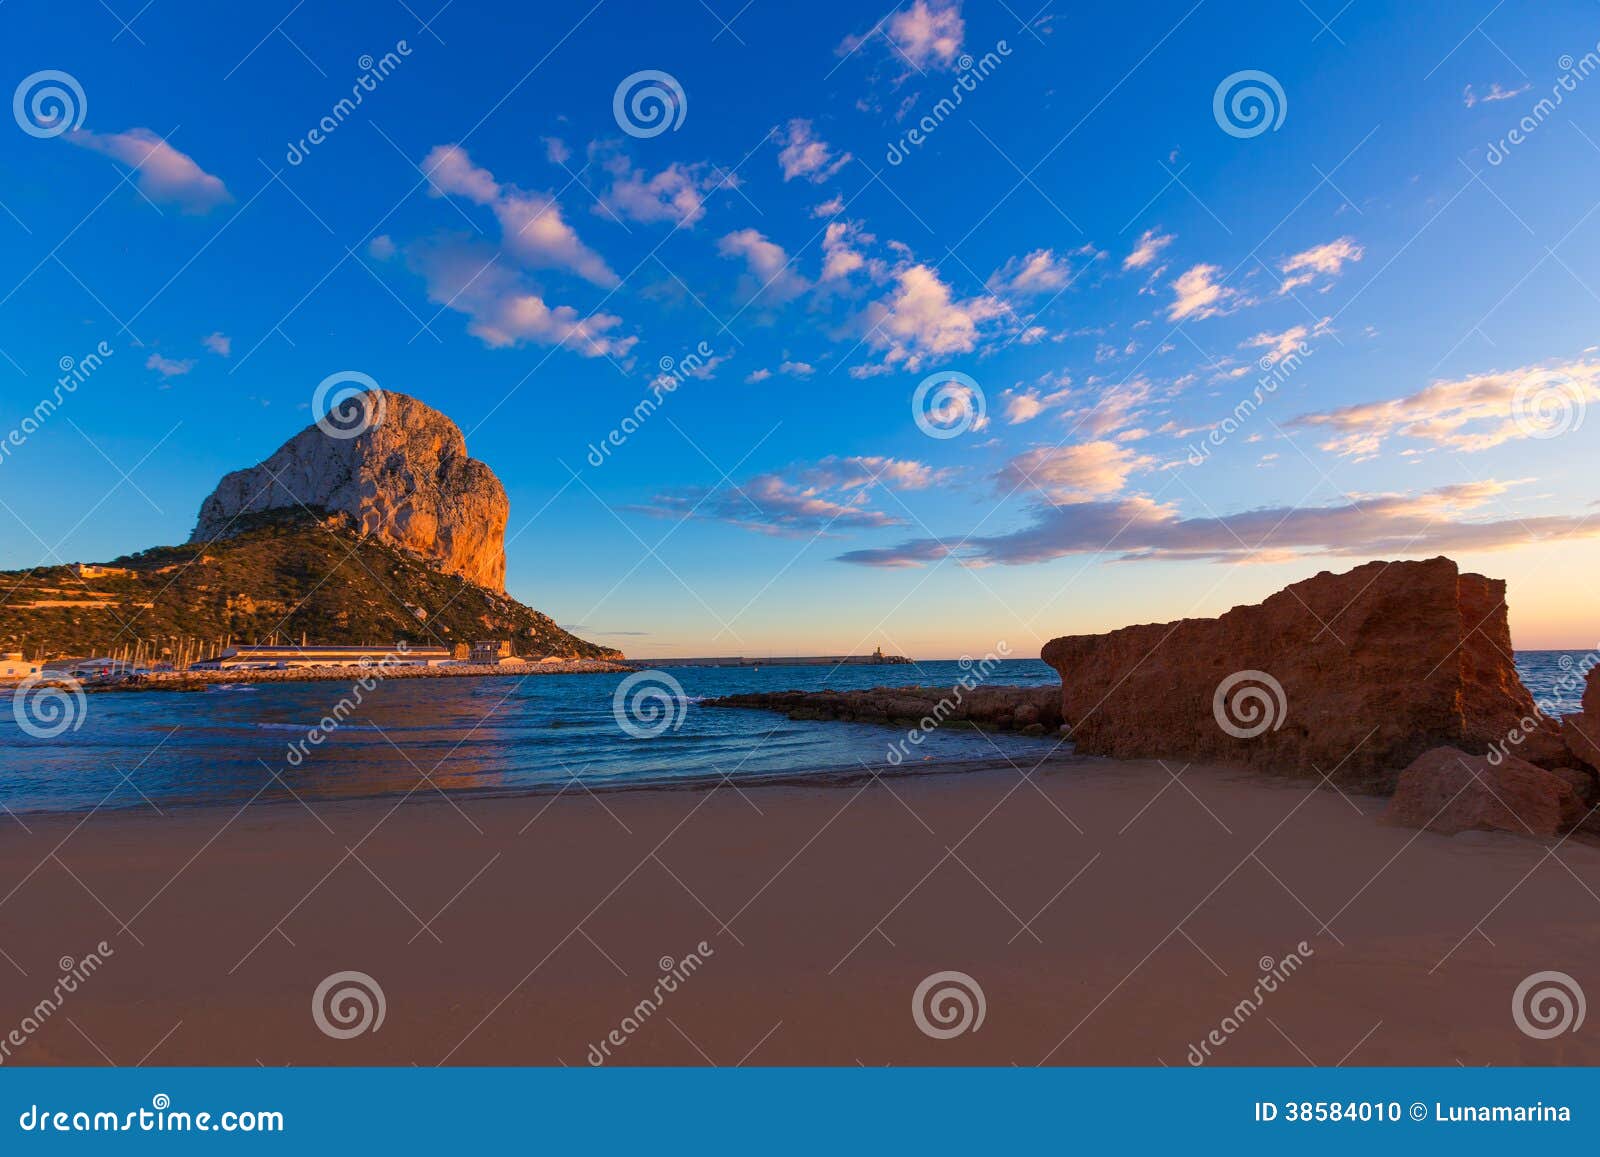 calpe alicante sunset at beach cantal roig